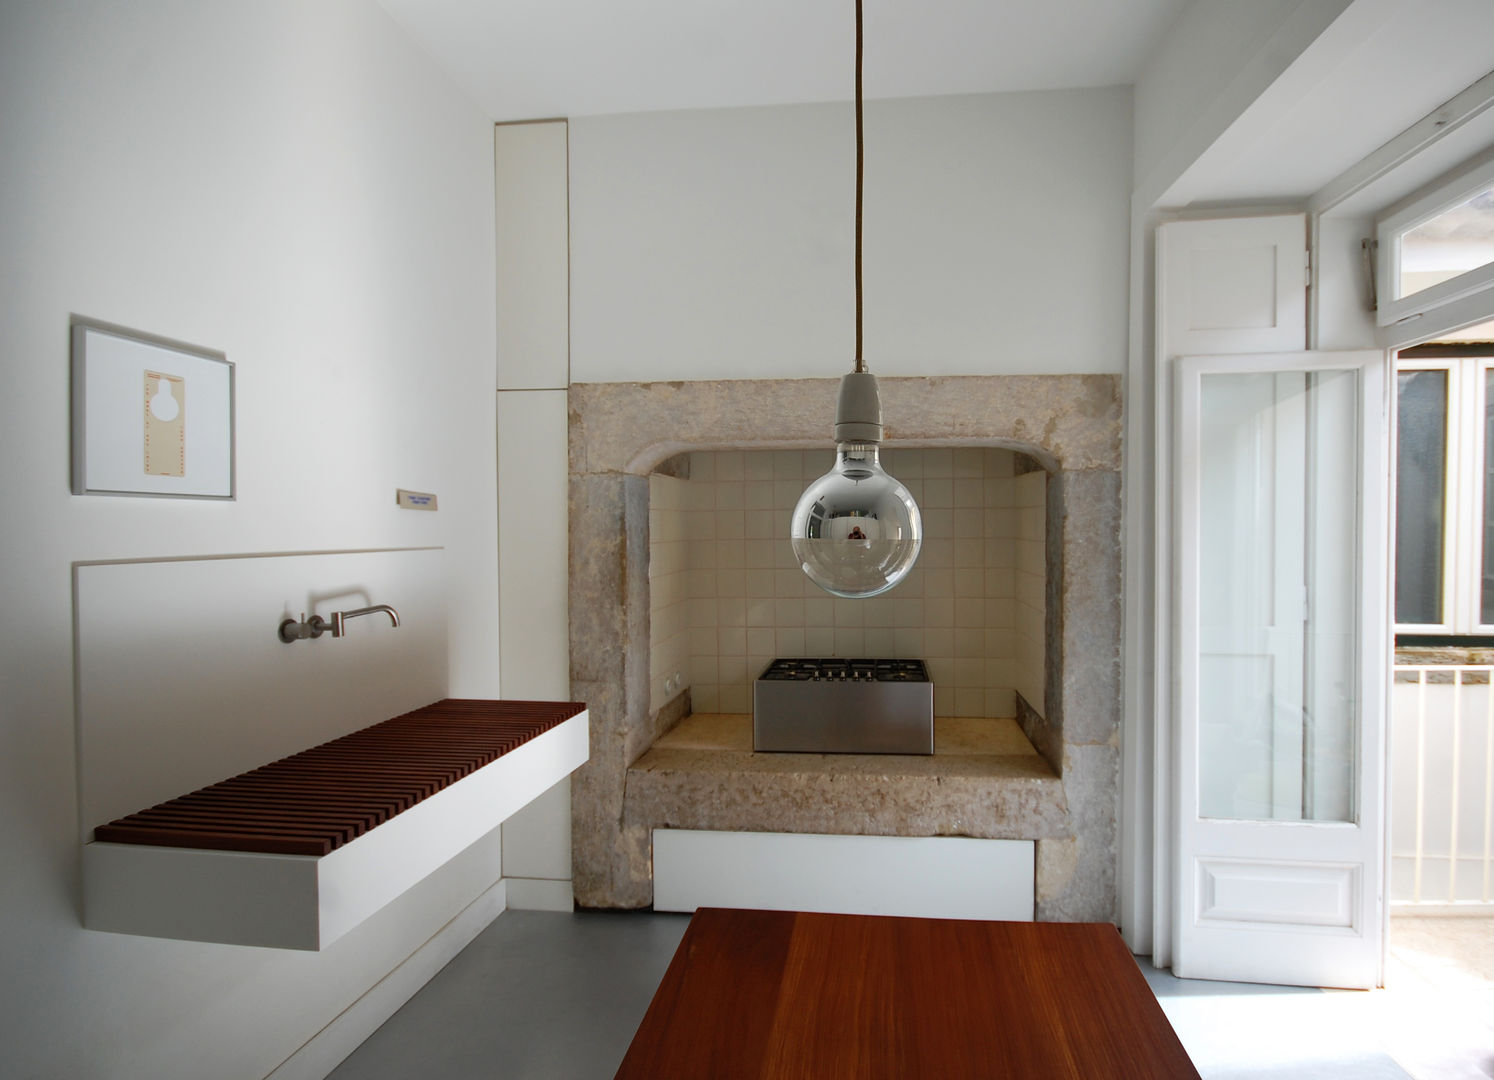 Apartamento Pedras Negras (2012), pedro pacheco arquitectos pedro pacheco arquitectos مطبخ